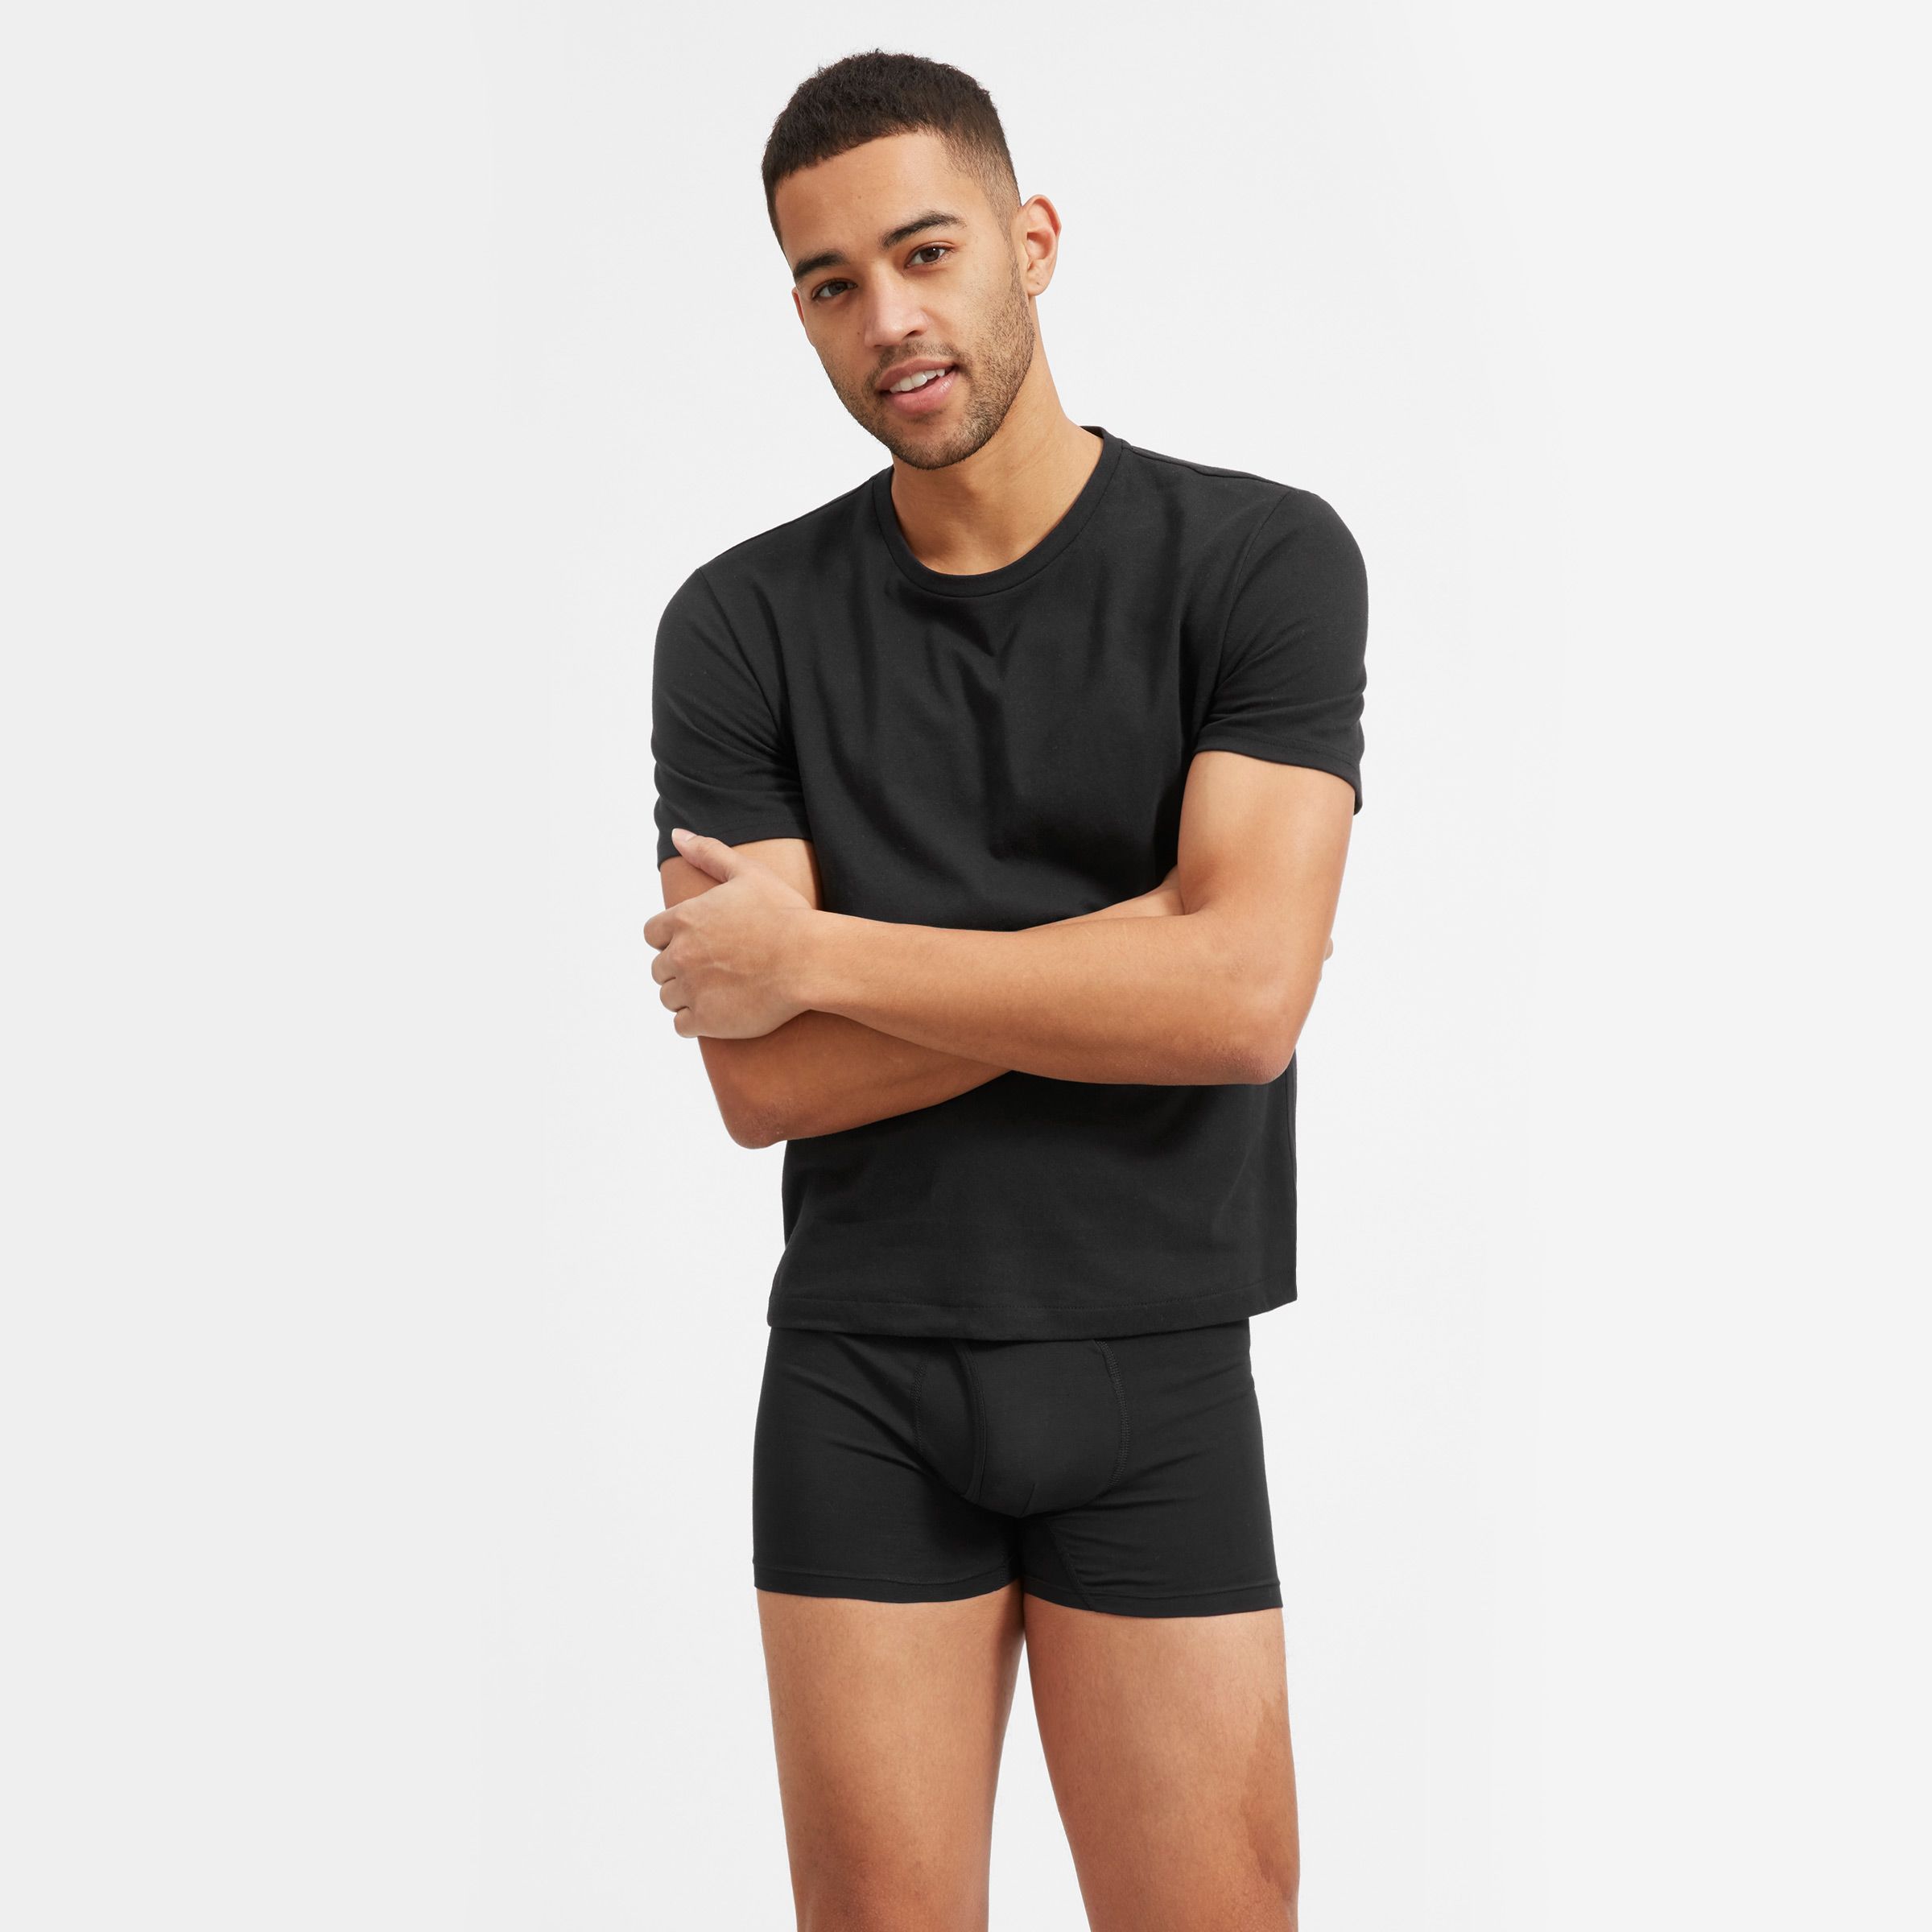 25 Best Underwear For Men in 2023, According to Pros